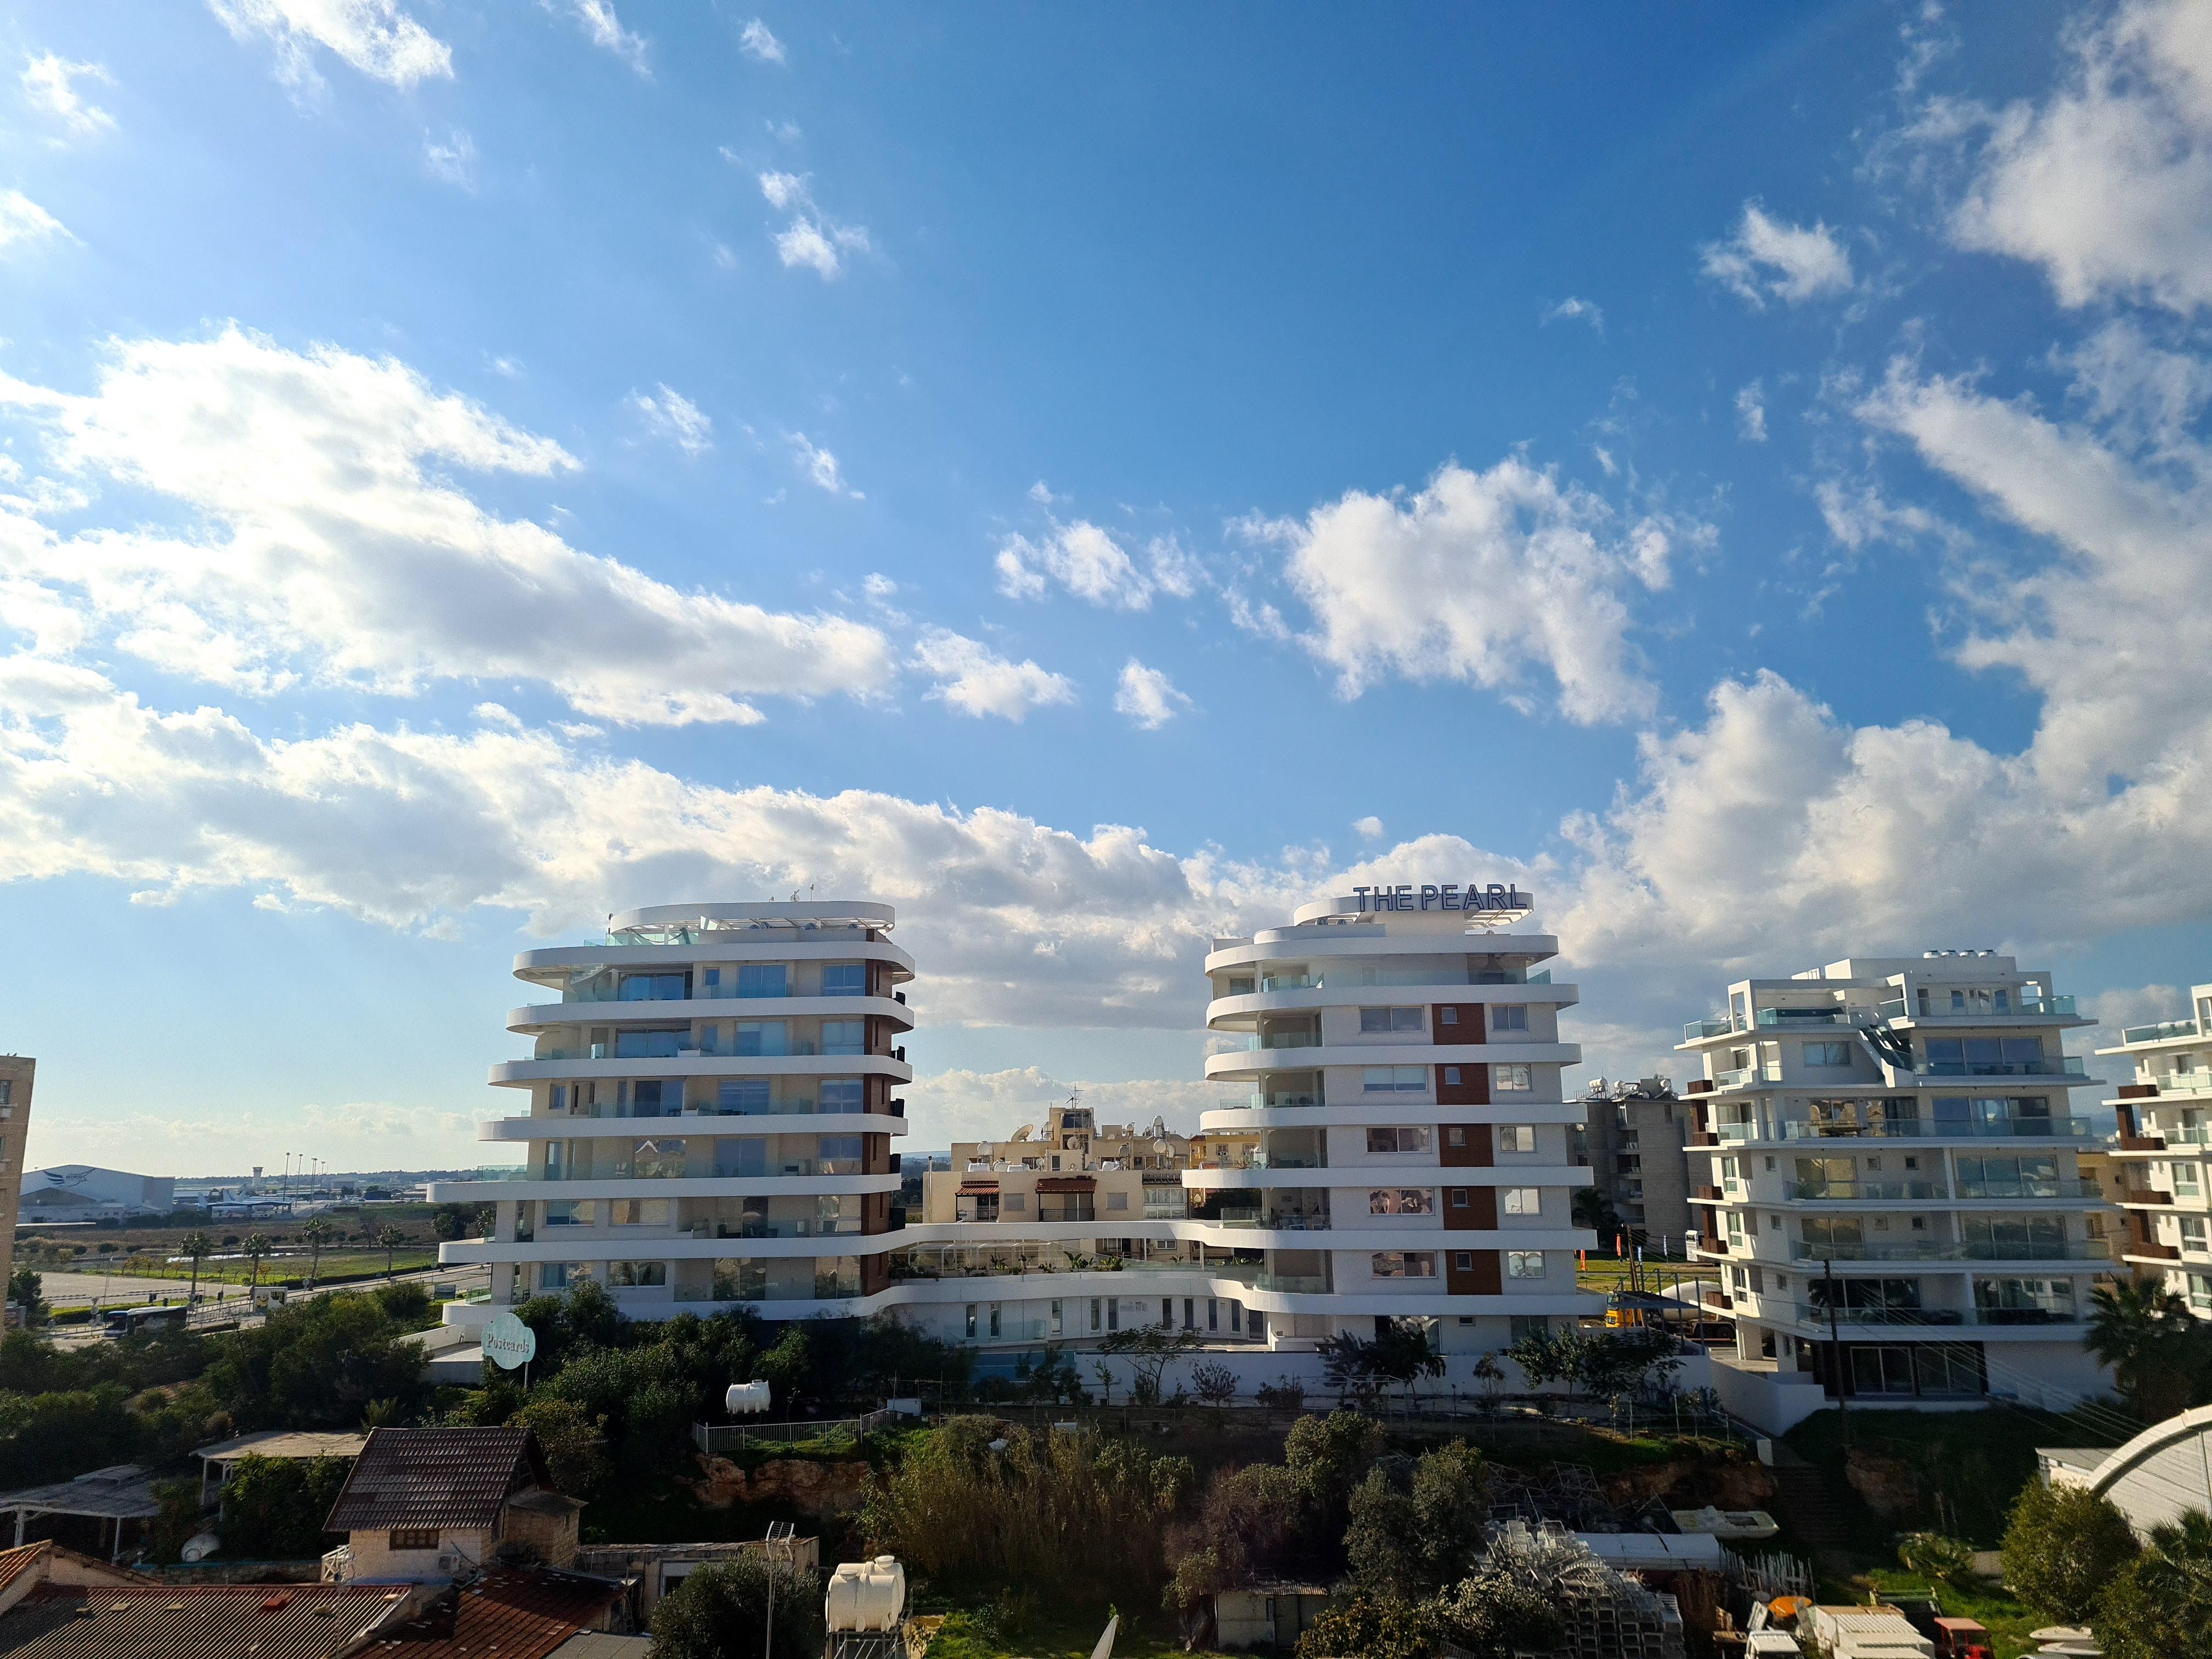 The Ciao Stelio Deluxe Hotel (Adults Only) Larnaca Zewnętrze zdjęcie